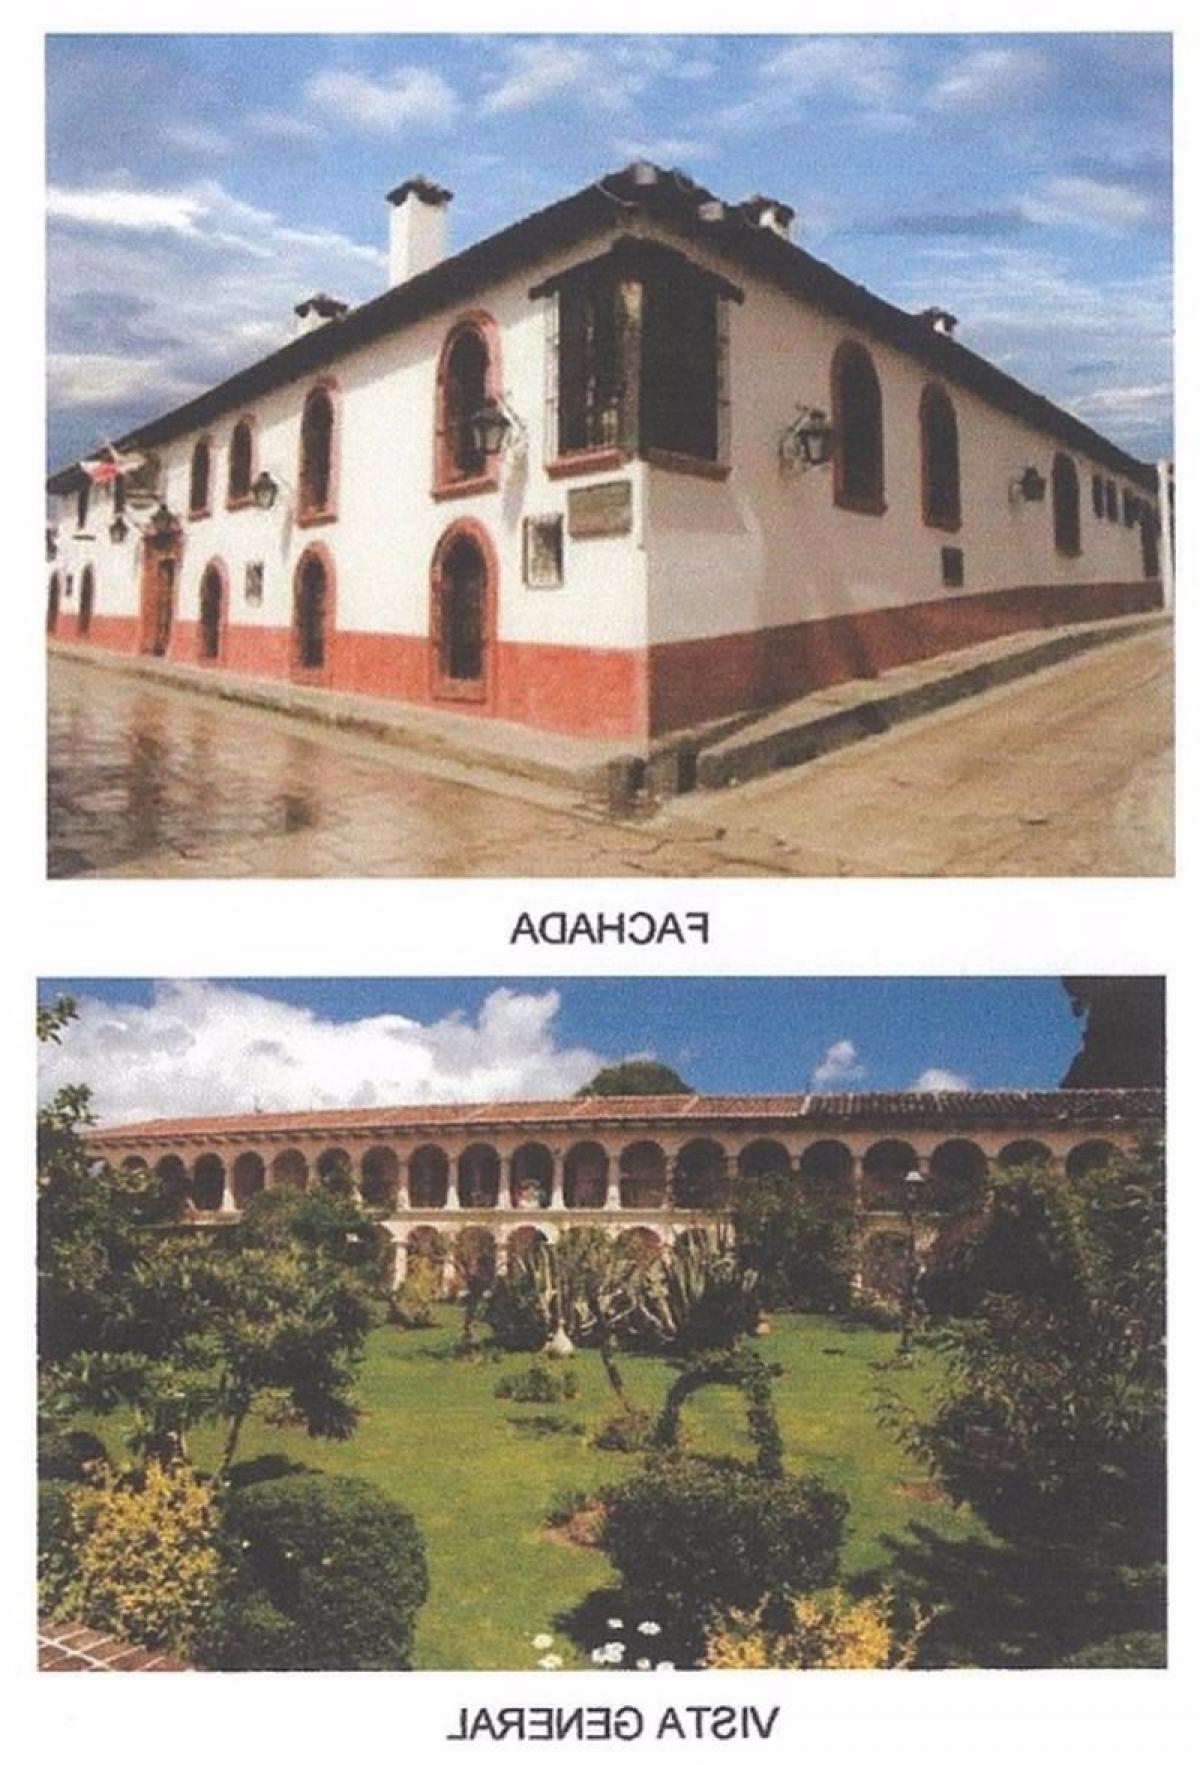 Picture of Development Site For Sale in San Cristobal De Las Casas, Chiapas, Mexico